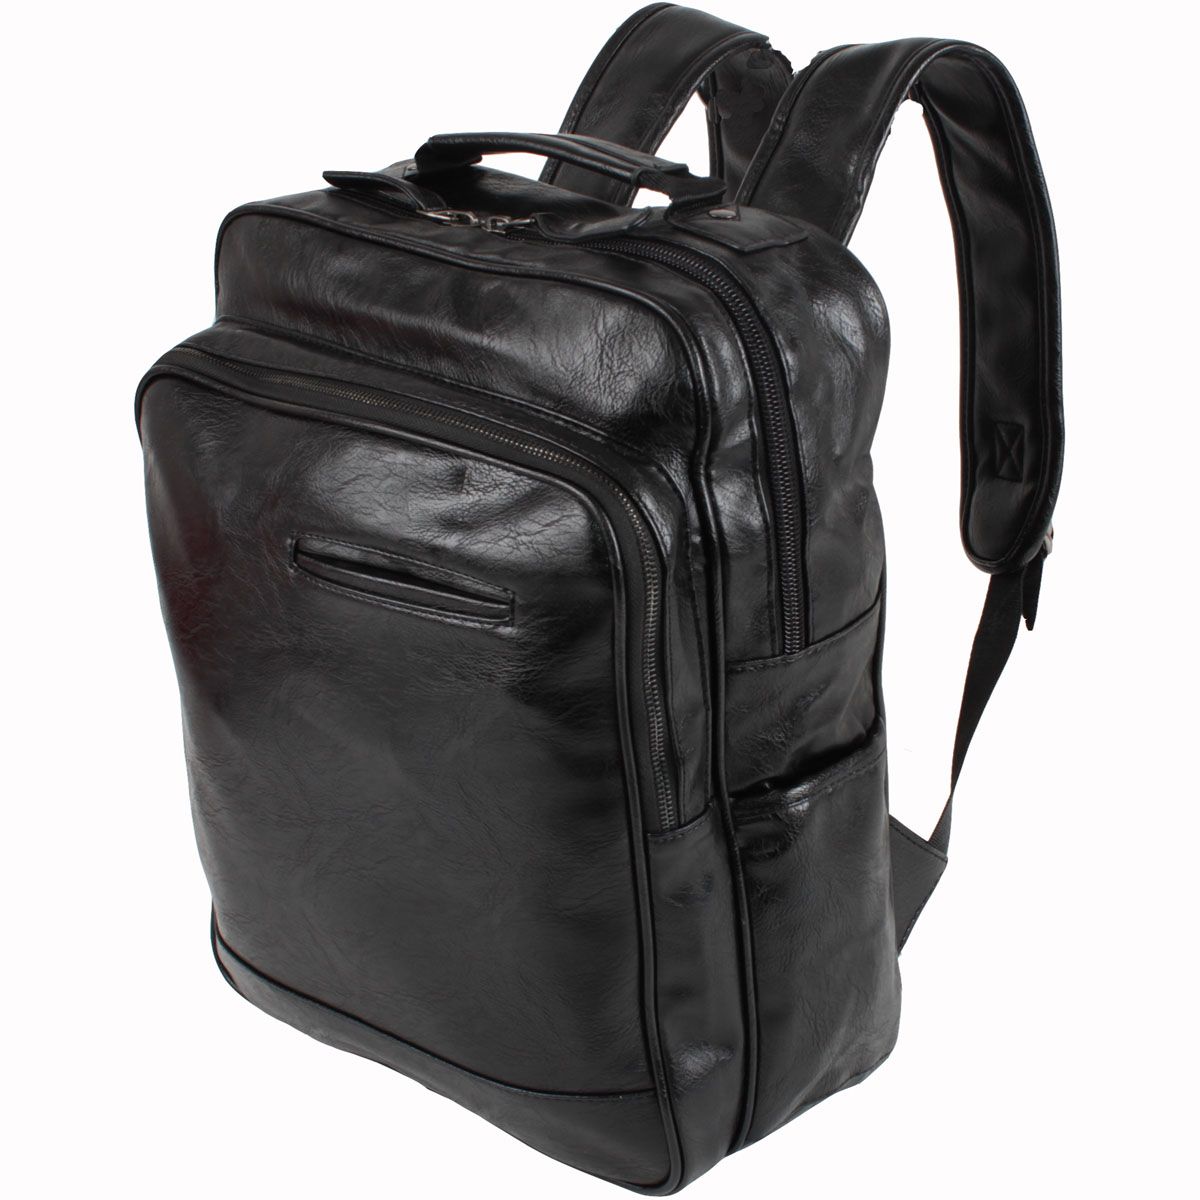 Сумка-рюкзак Flioraj, цвет: черный. 0964 черн